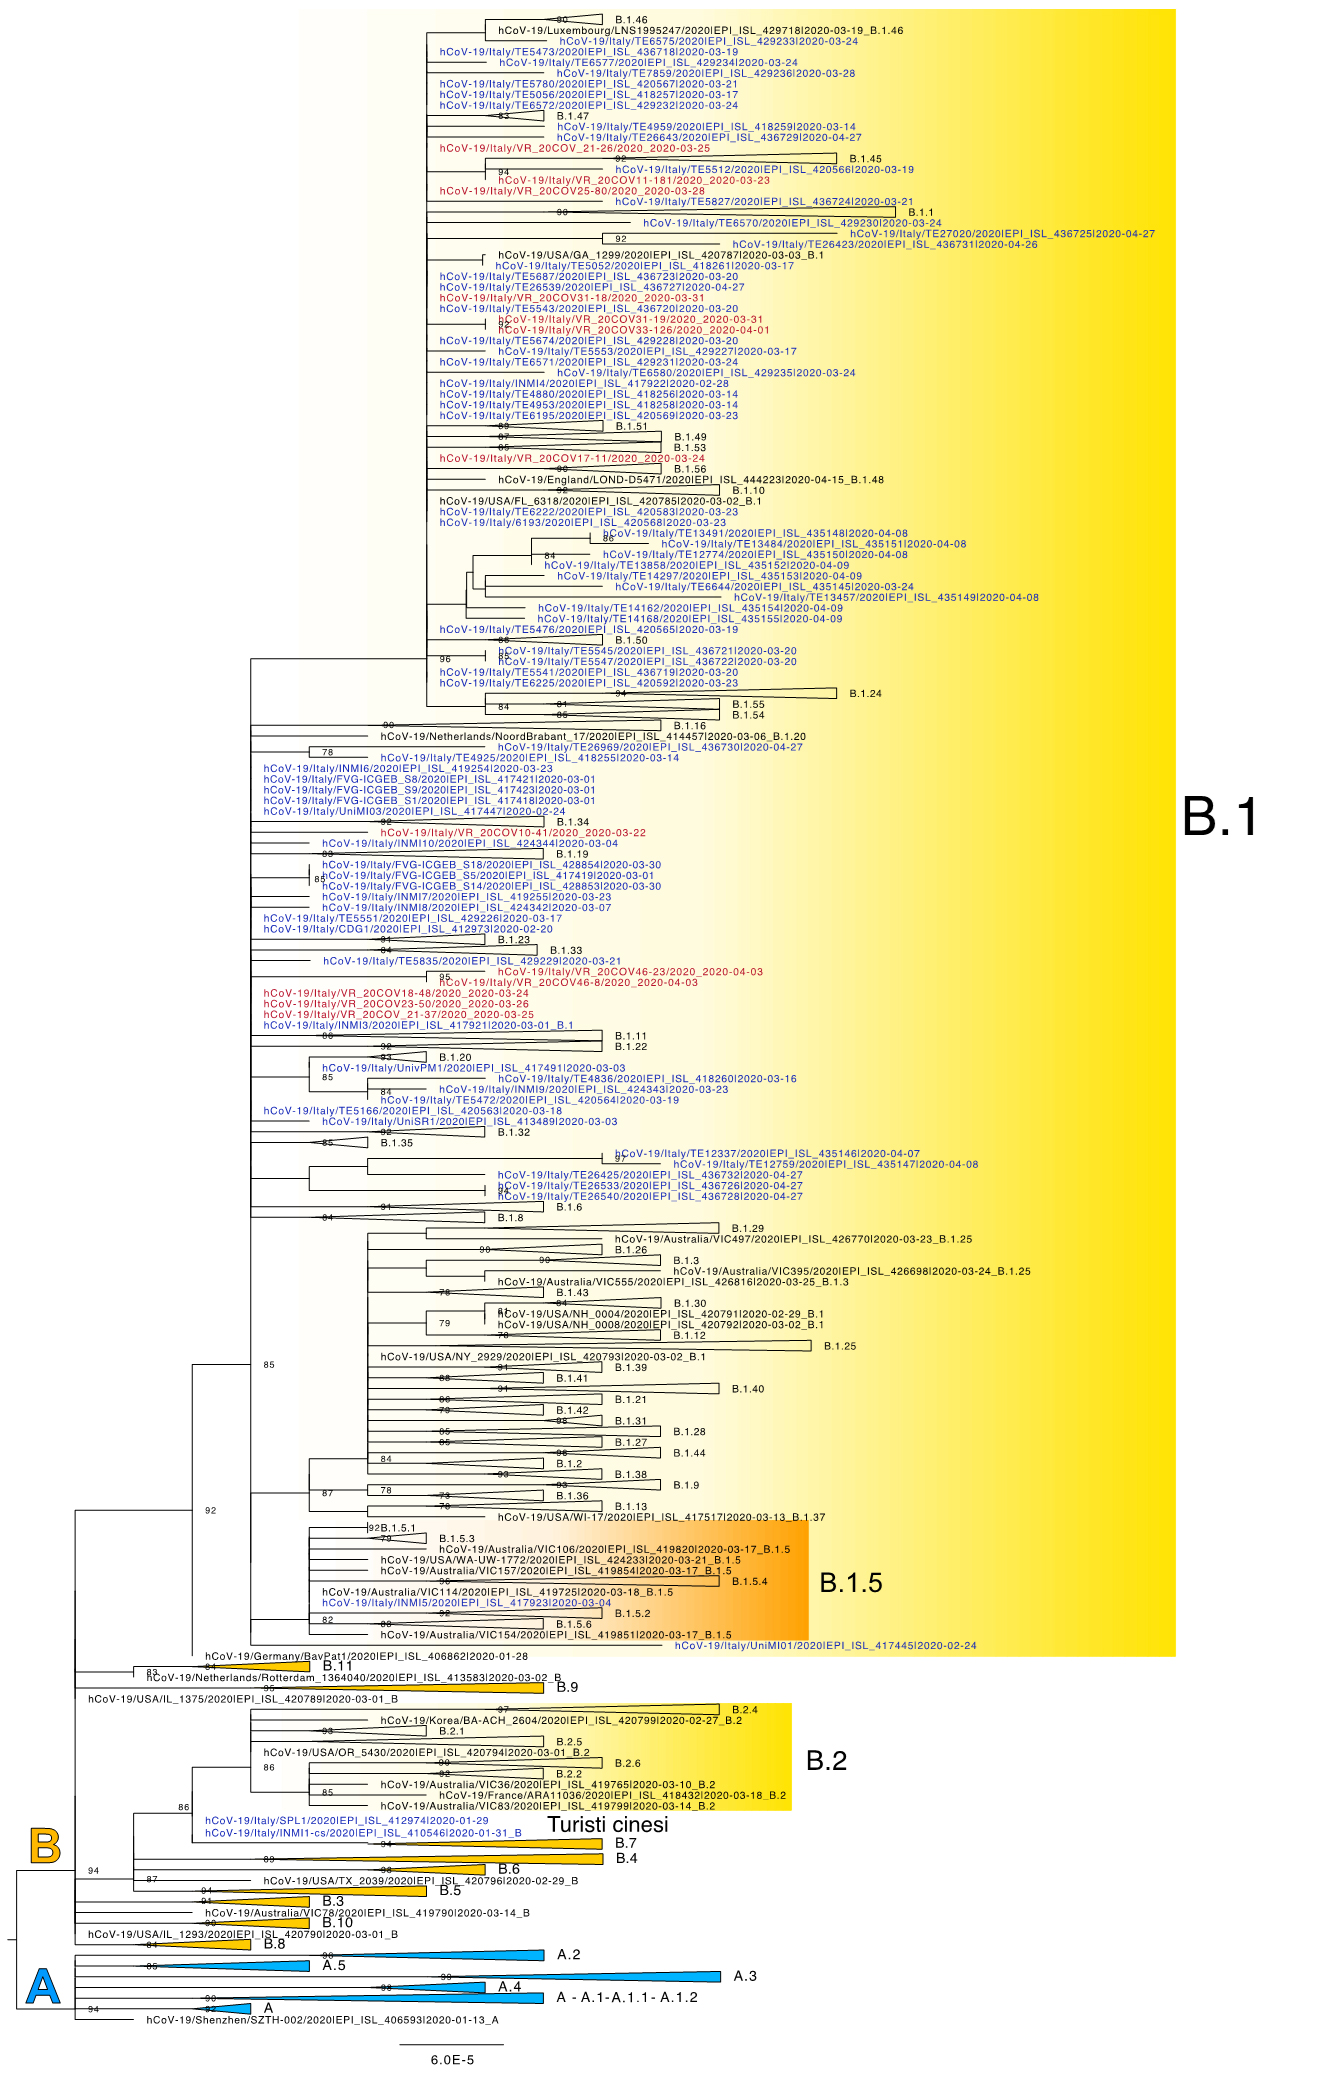 Sequenze genomiche SARS-CoV-2